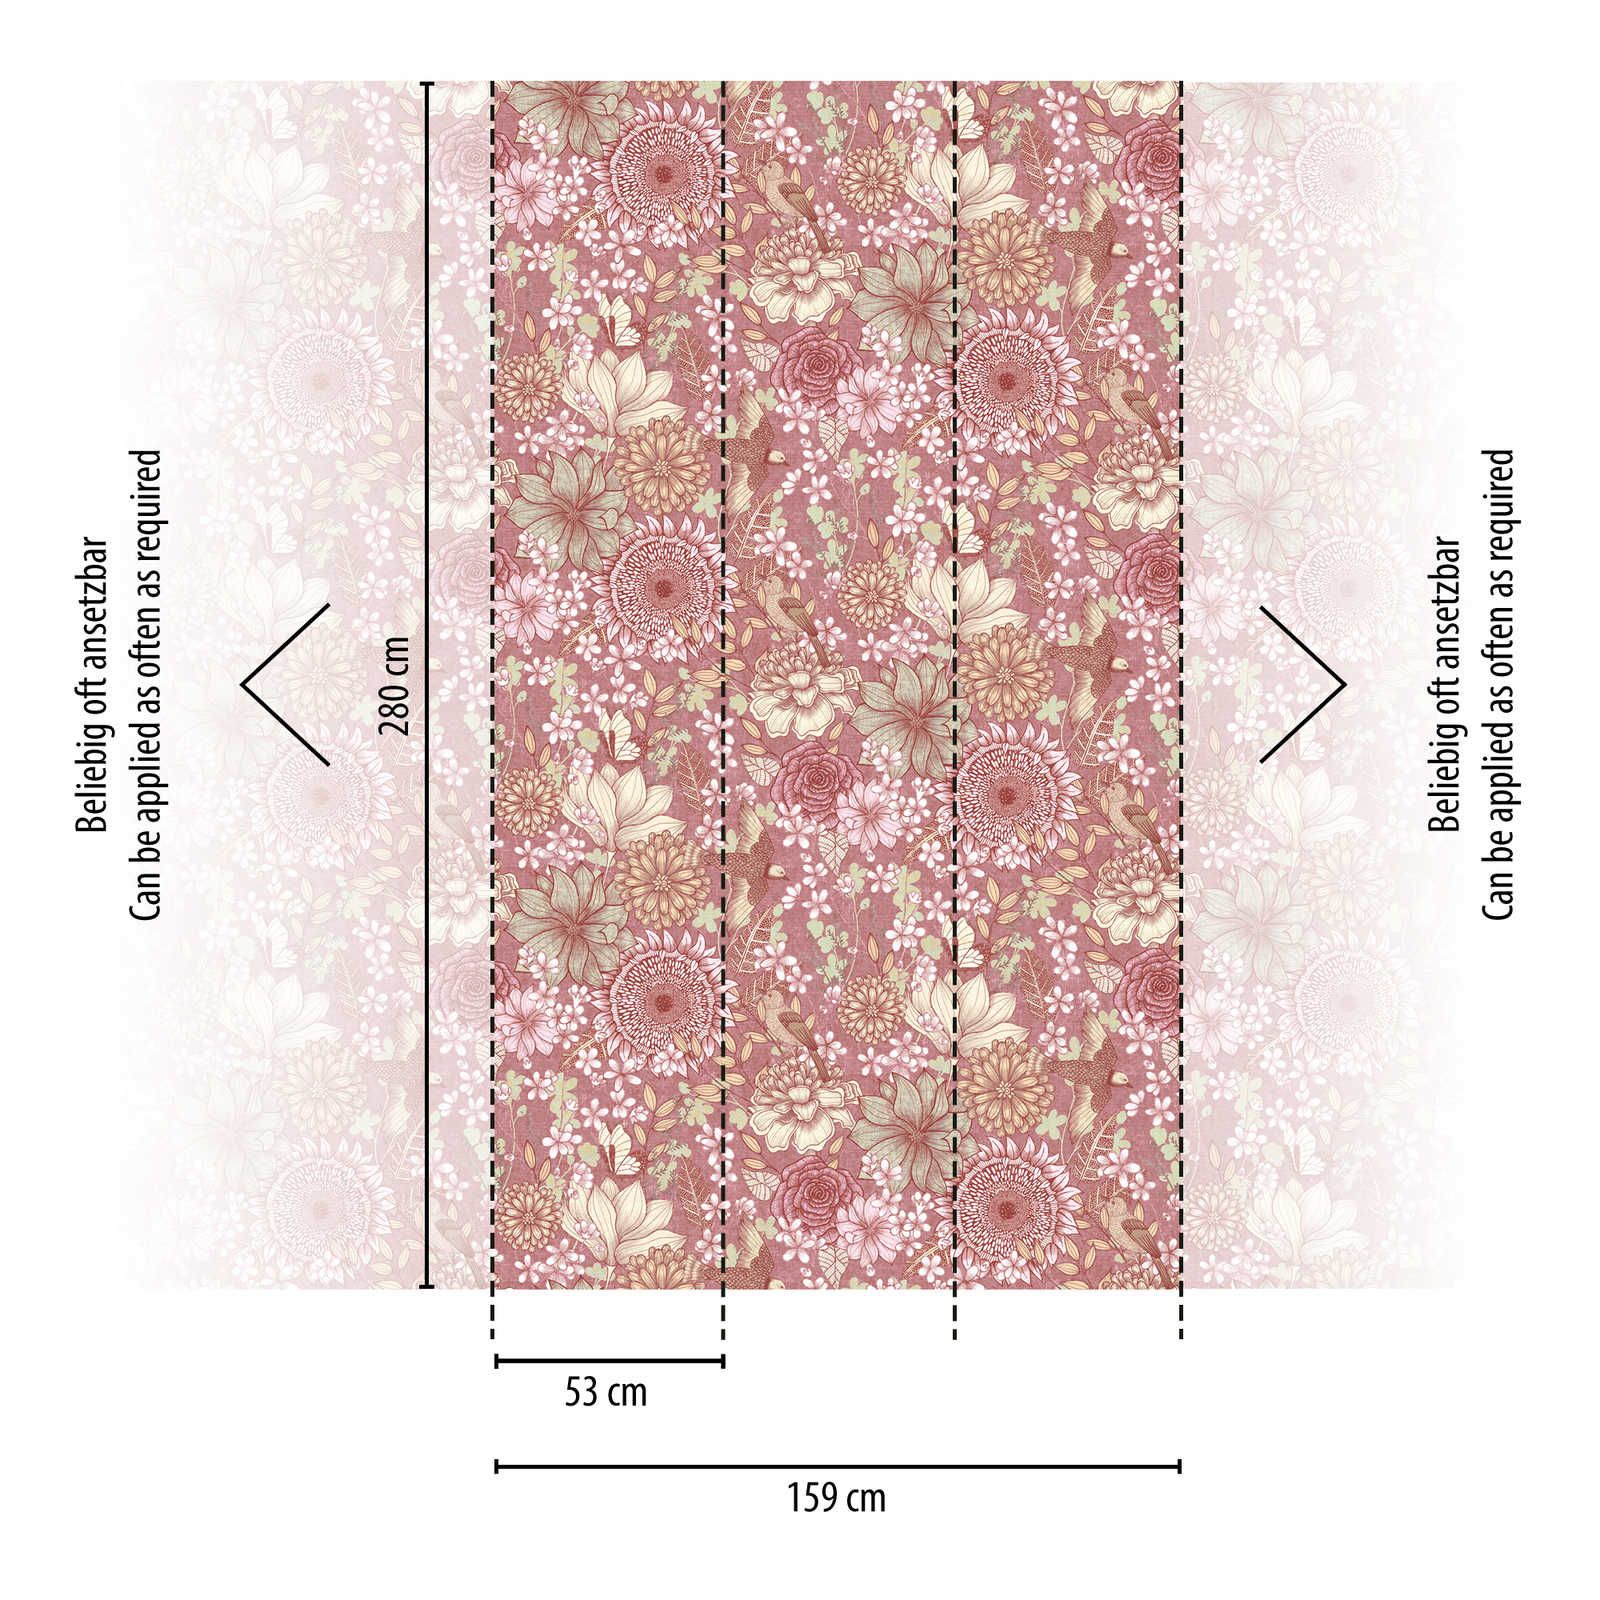             Papier peint intissé floral avec différentes fleurs et feuilles - rose, blanc, crème
        